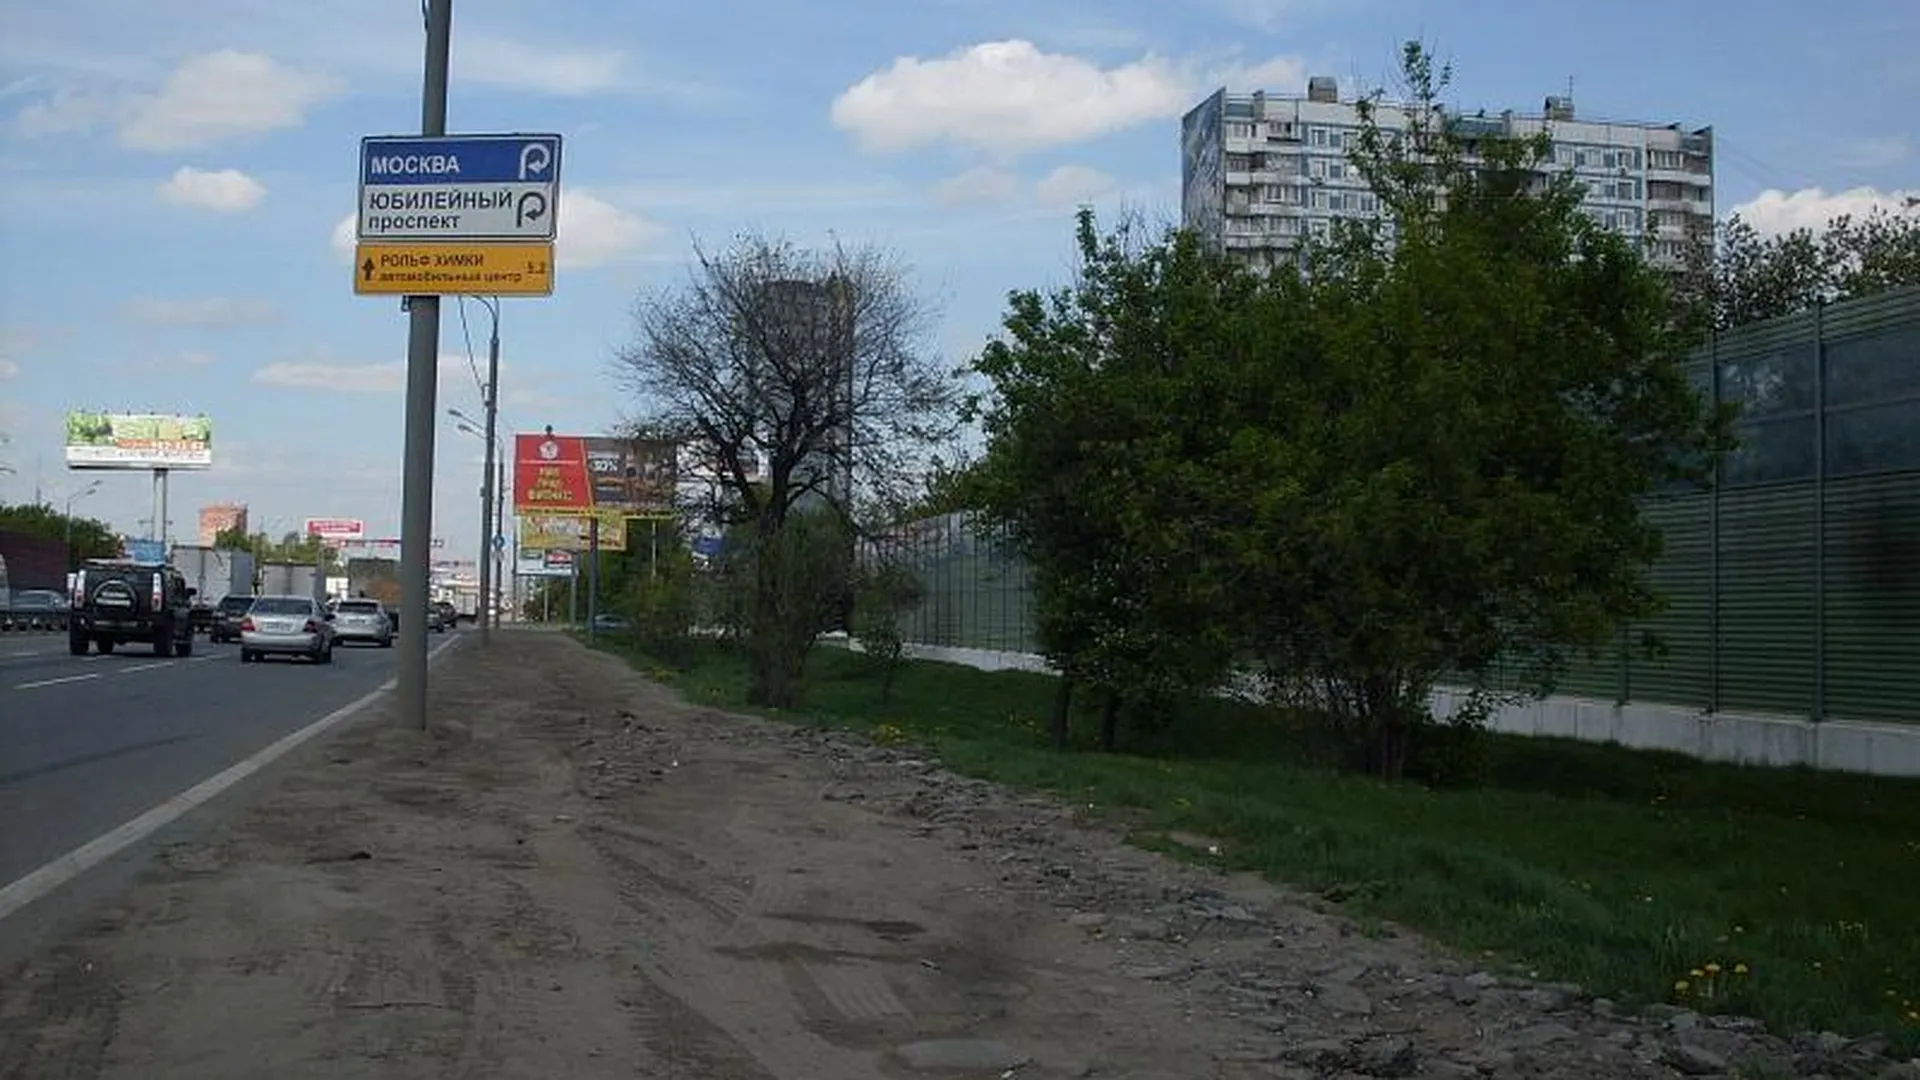 Нарушения чистоты на дорогах МО обошлись в 1,3 млн руб за неделю